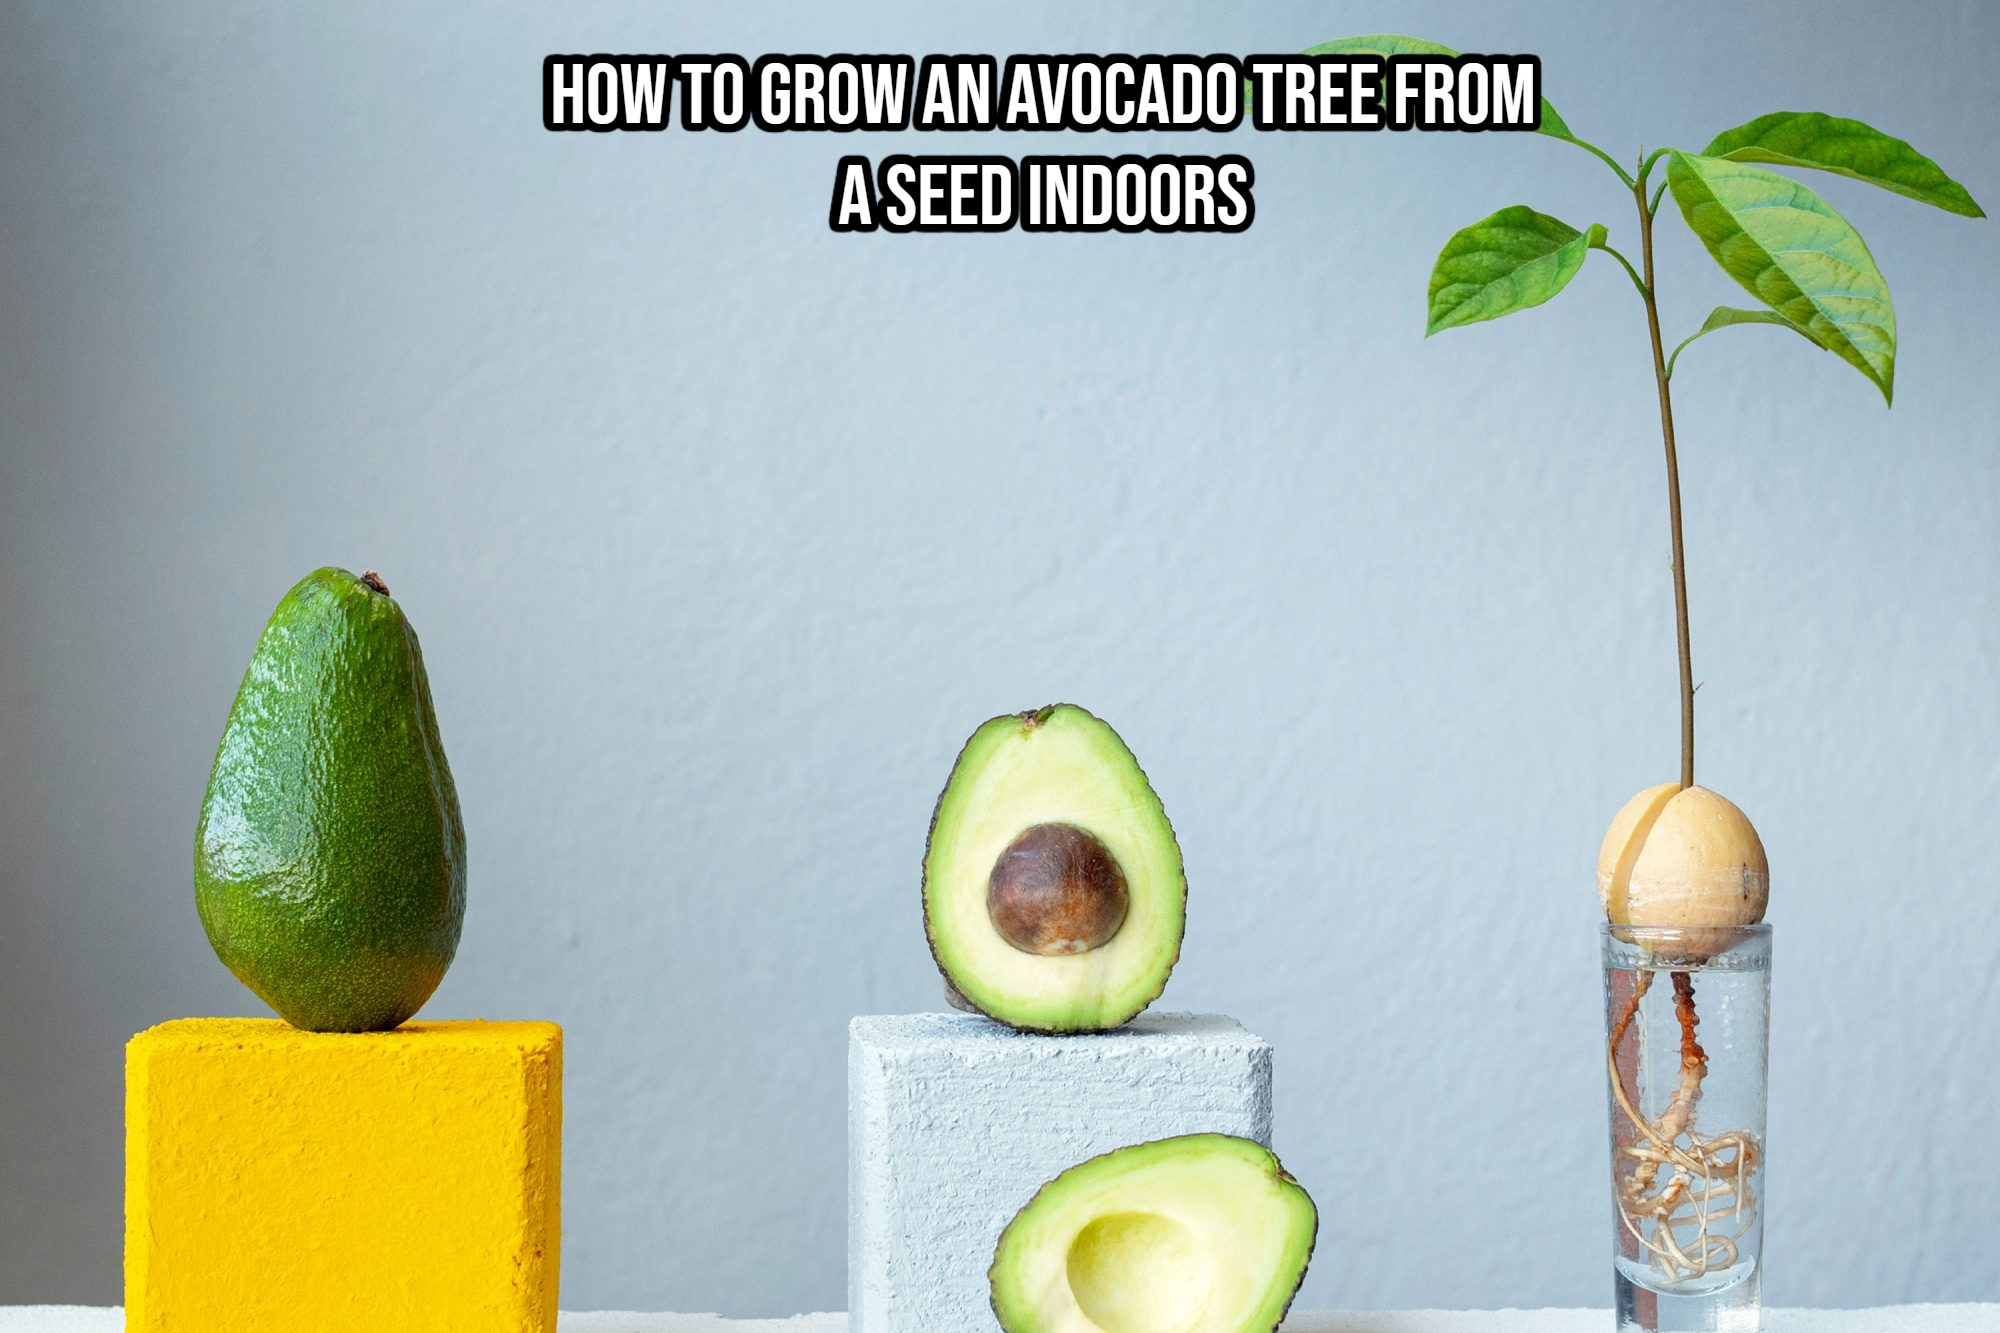 Фото авокадо выращенных в домашних условиях. Прорастить авокадо. Прорастить авокадо из косточки. Цветение авокадо. Авокадо дерево.